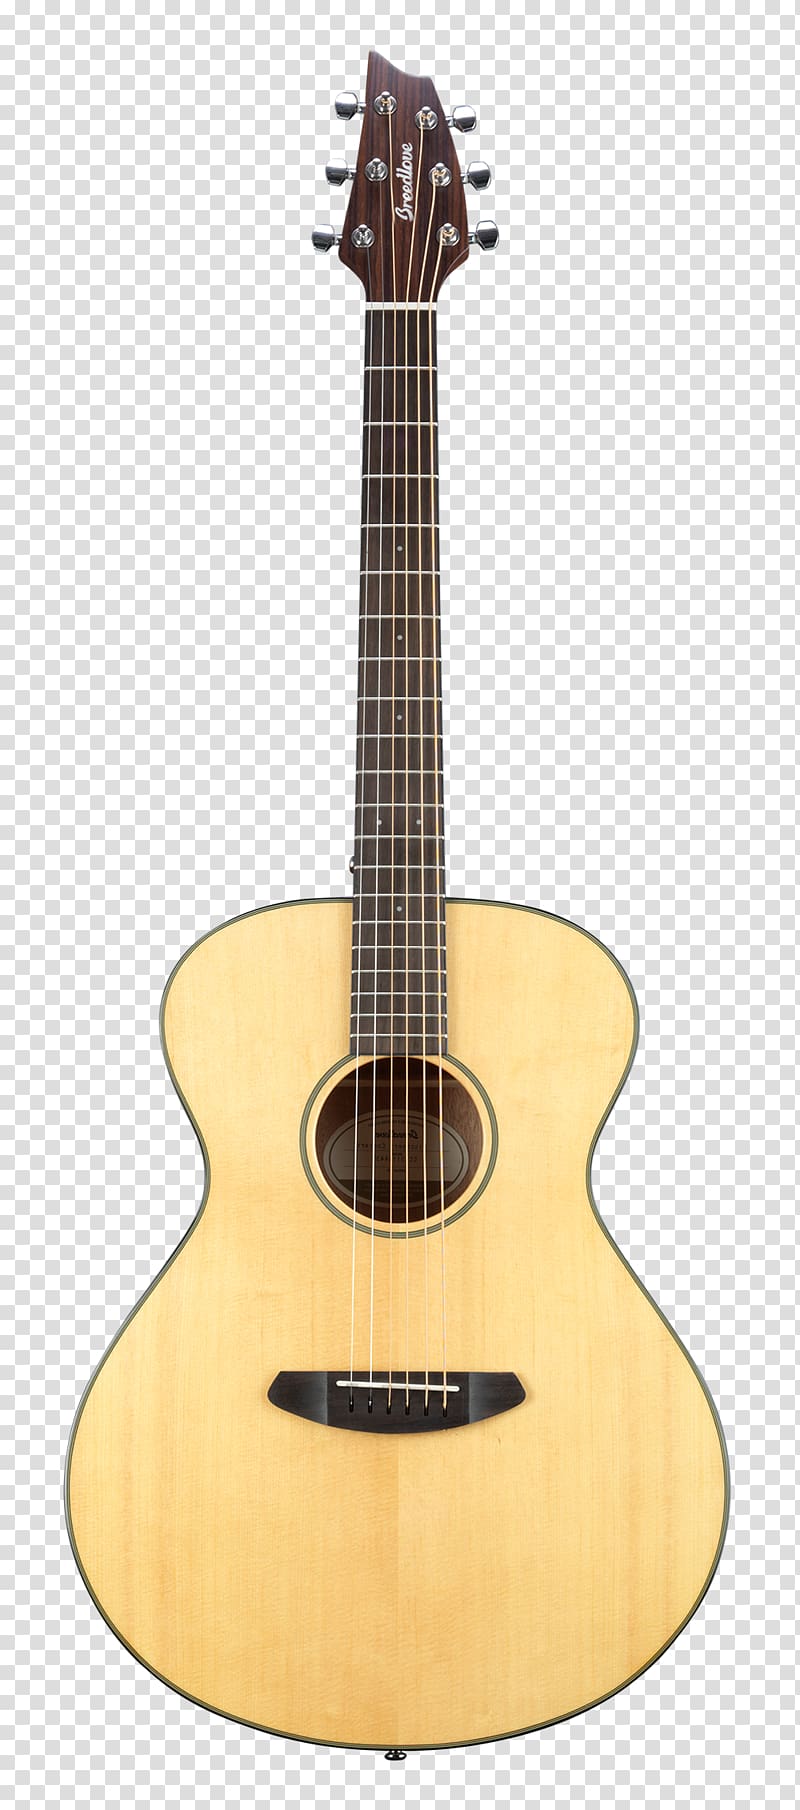 Steel-string acoustic guitar Twelve-string guitar Acoustic-electric guitar Dreadnought, Acoustic Guitar transparent background PNG clipart